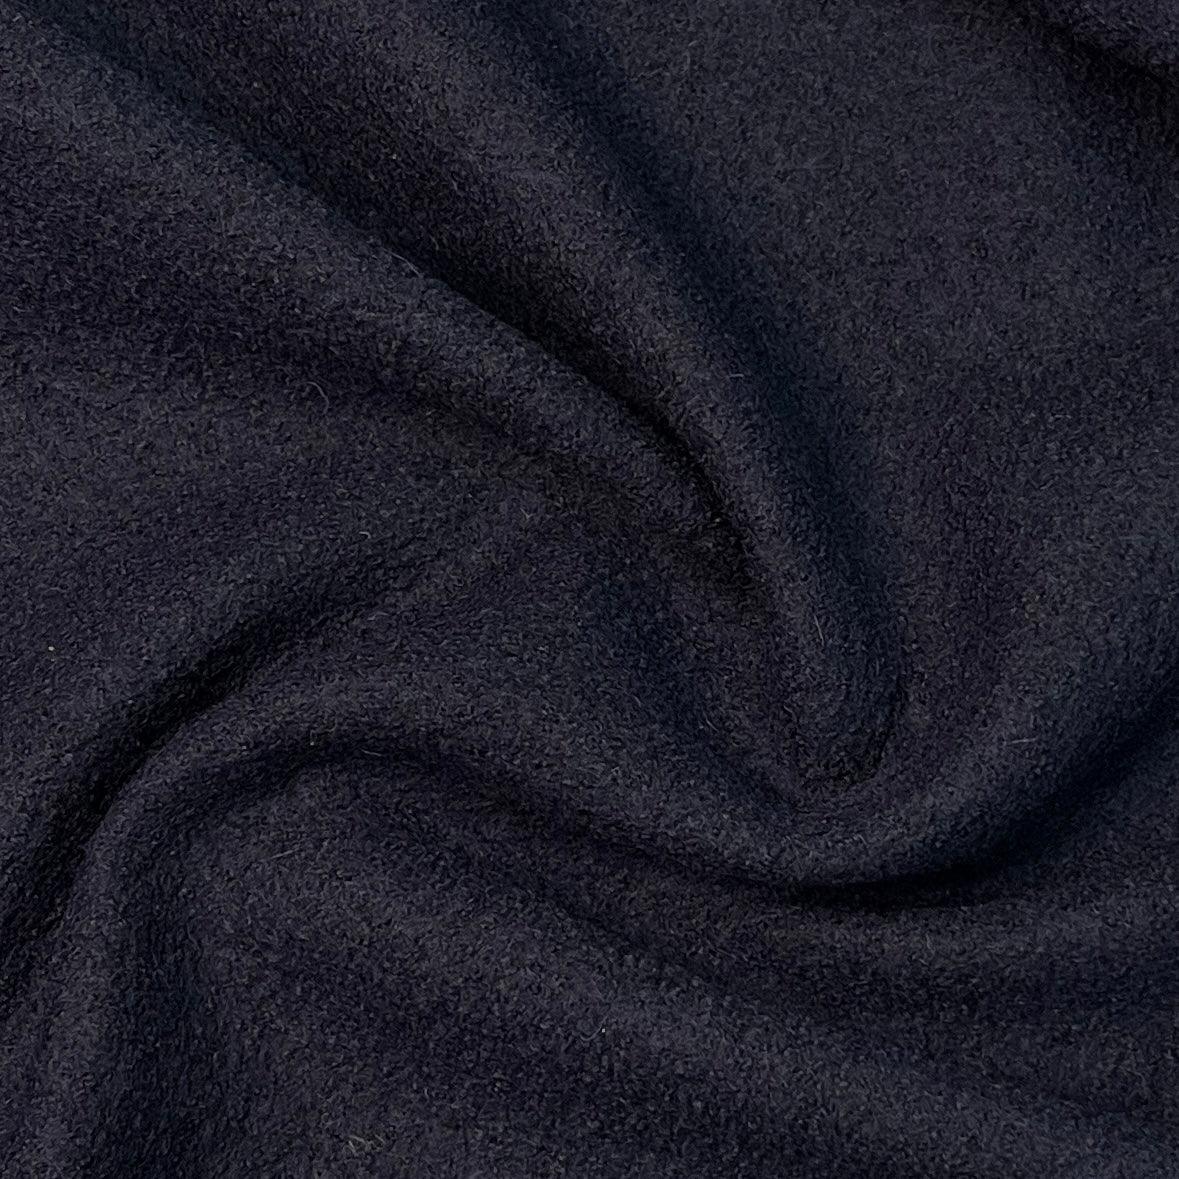 Navy Boiled Wool Fabric by Telio - Nature's Fabrics